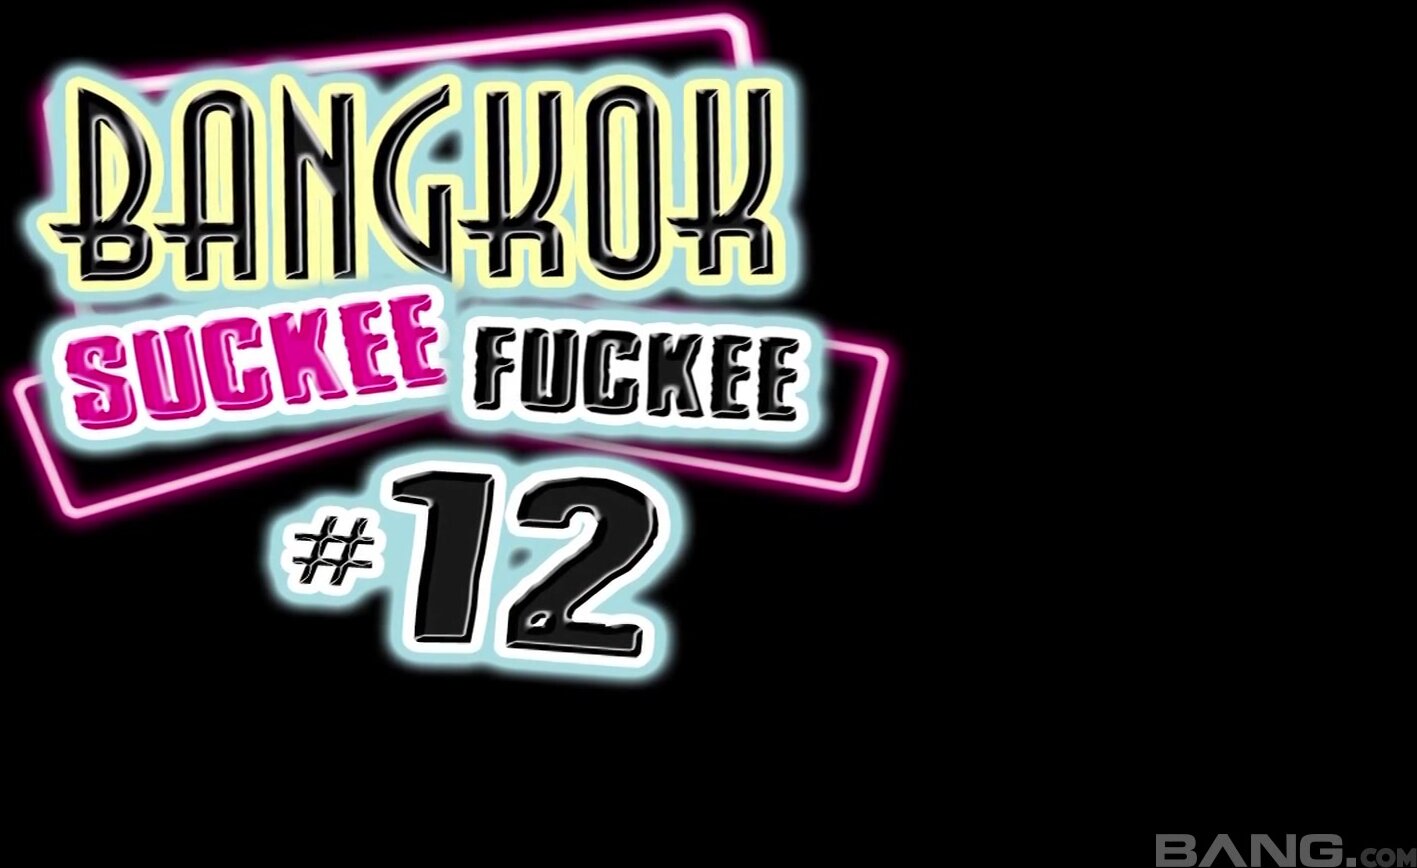 Bangkok Suckee Fuckee XXX